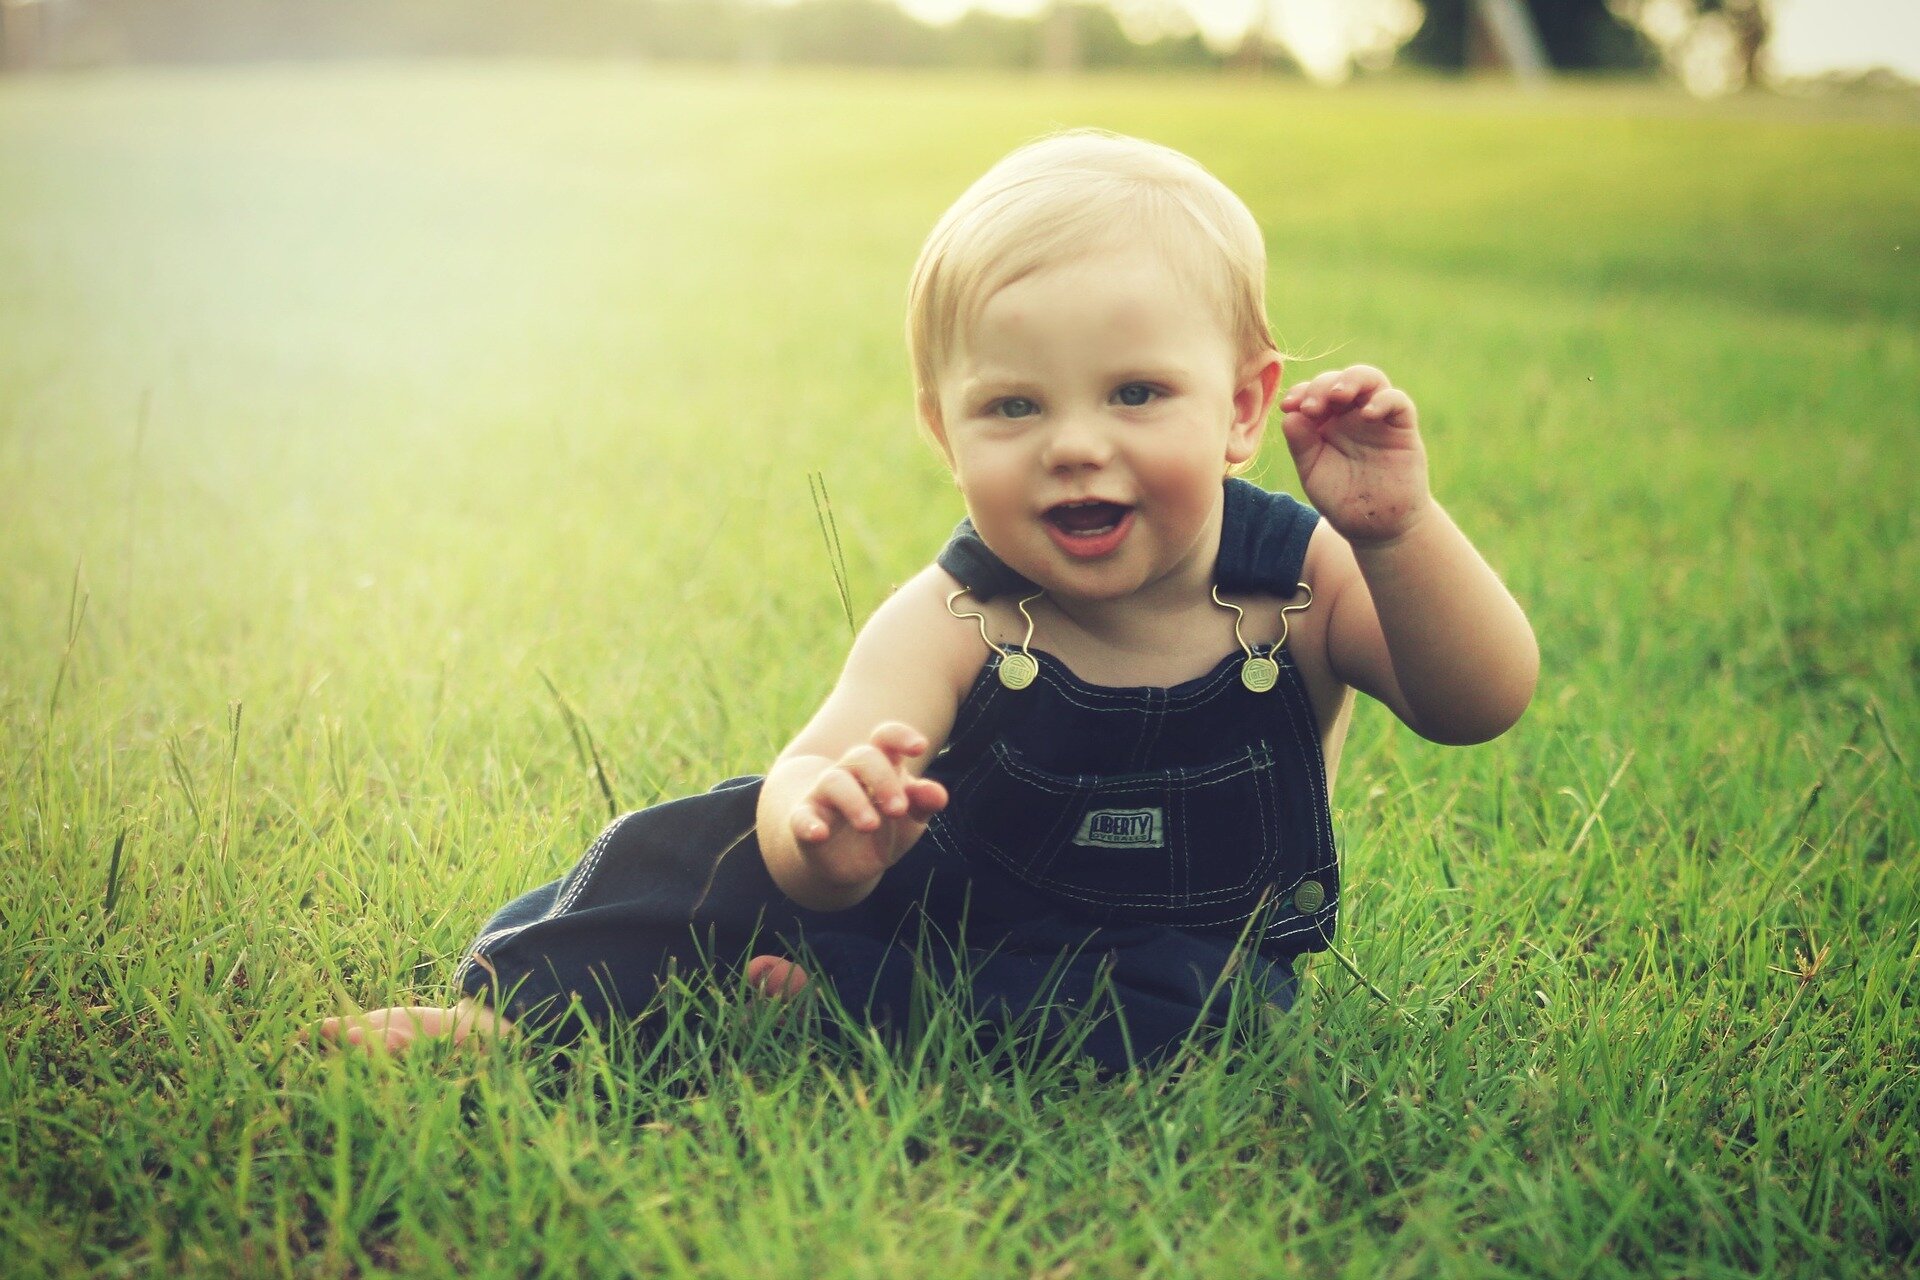 Zdjęcie przedstawia małego chłopca w ogrodniczkach siedzącego na trawie. Chłopiec uśmiecha się.